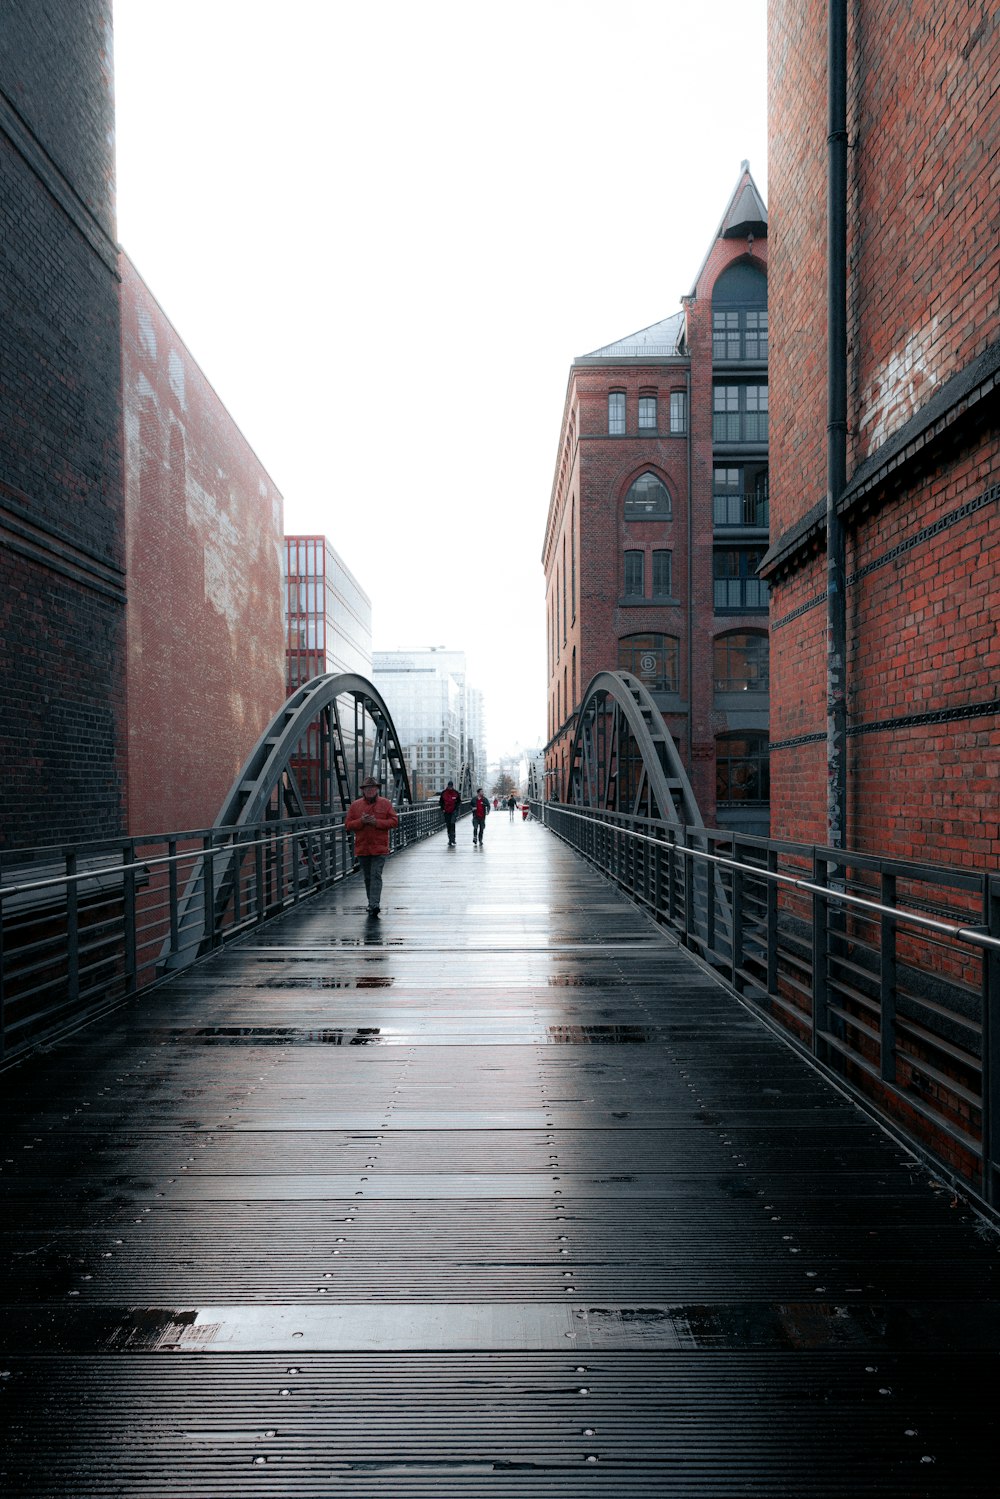 people walking across a bridge in the rain